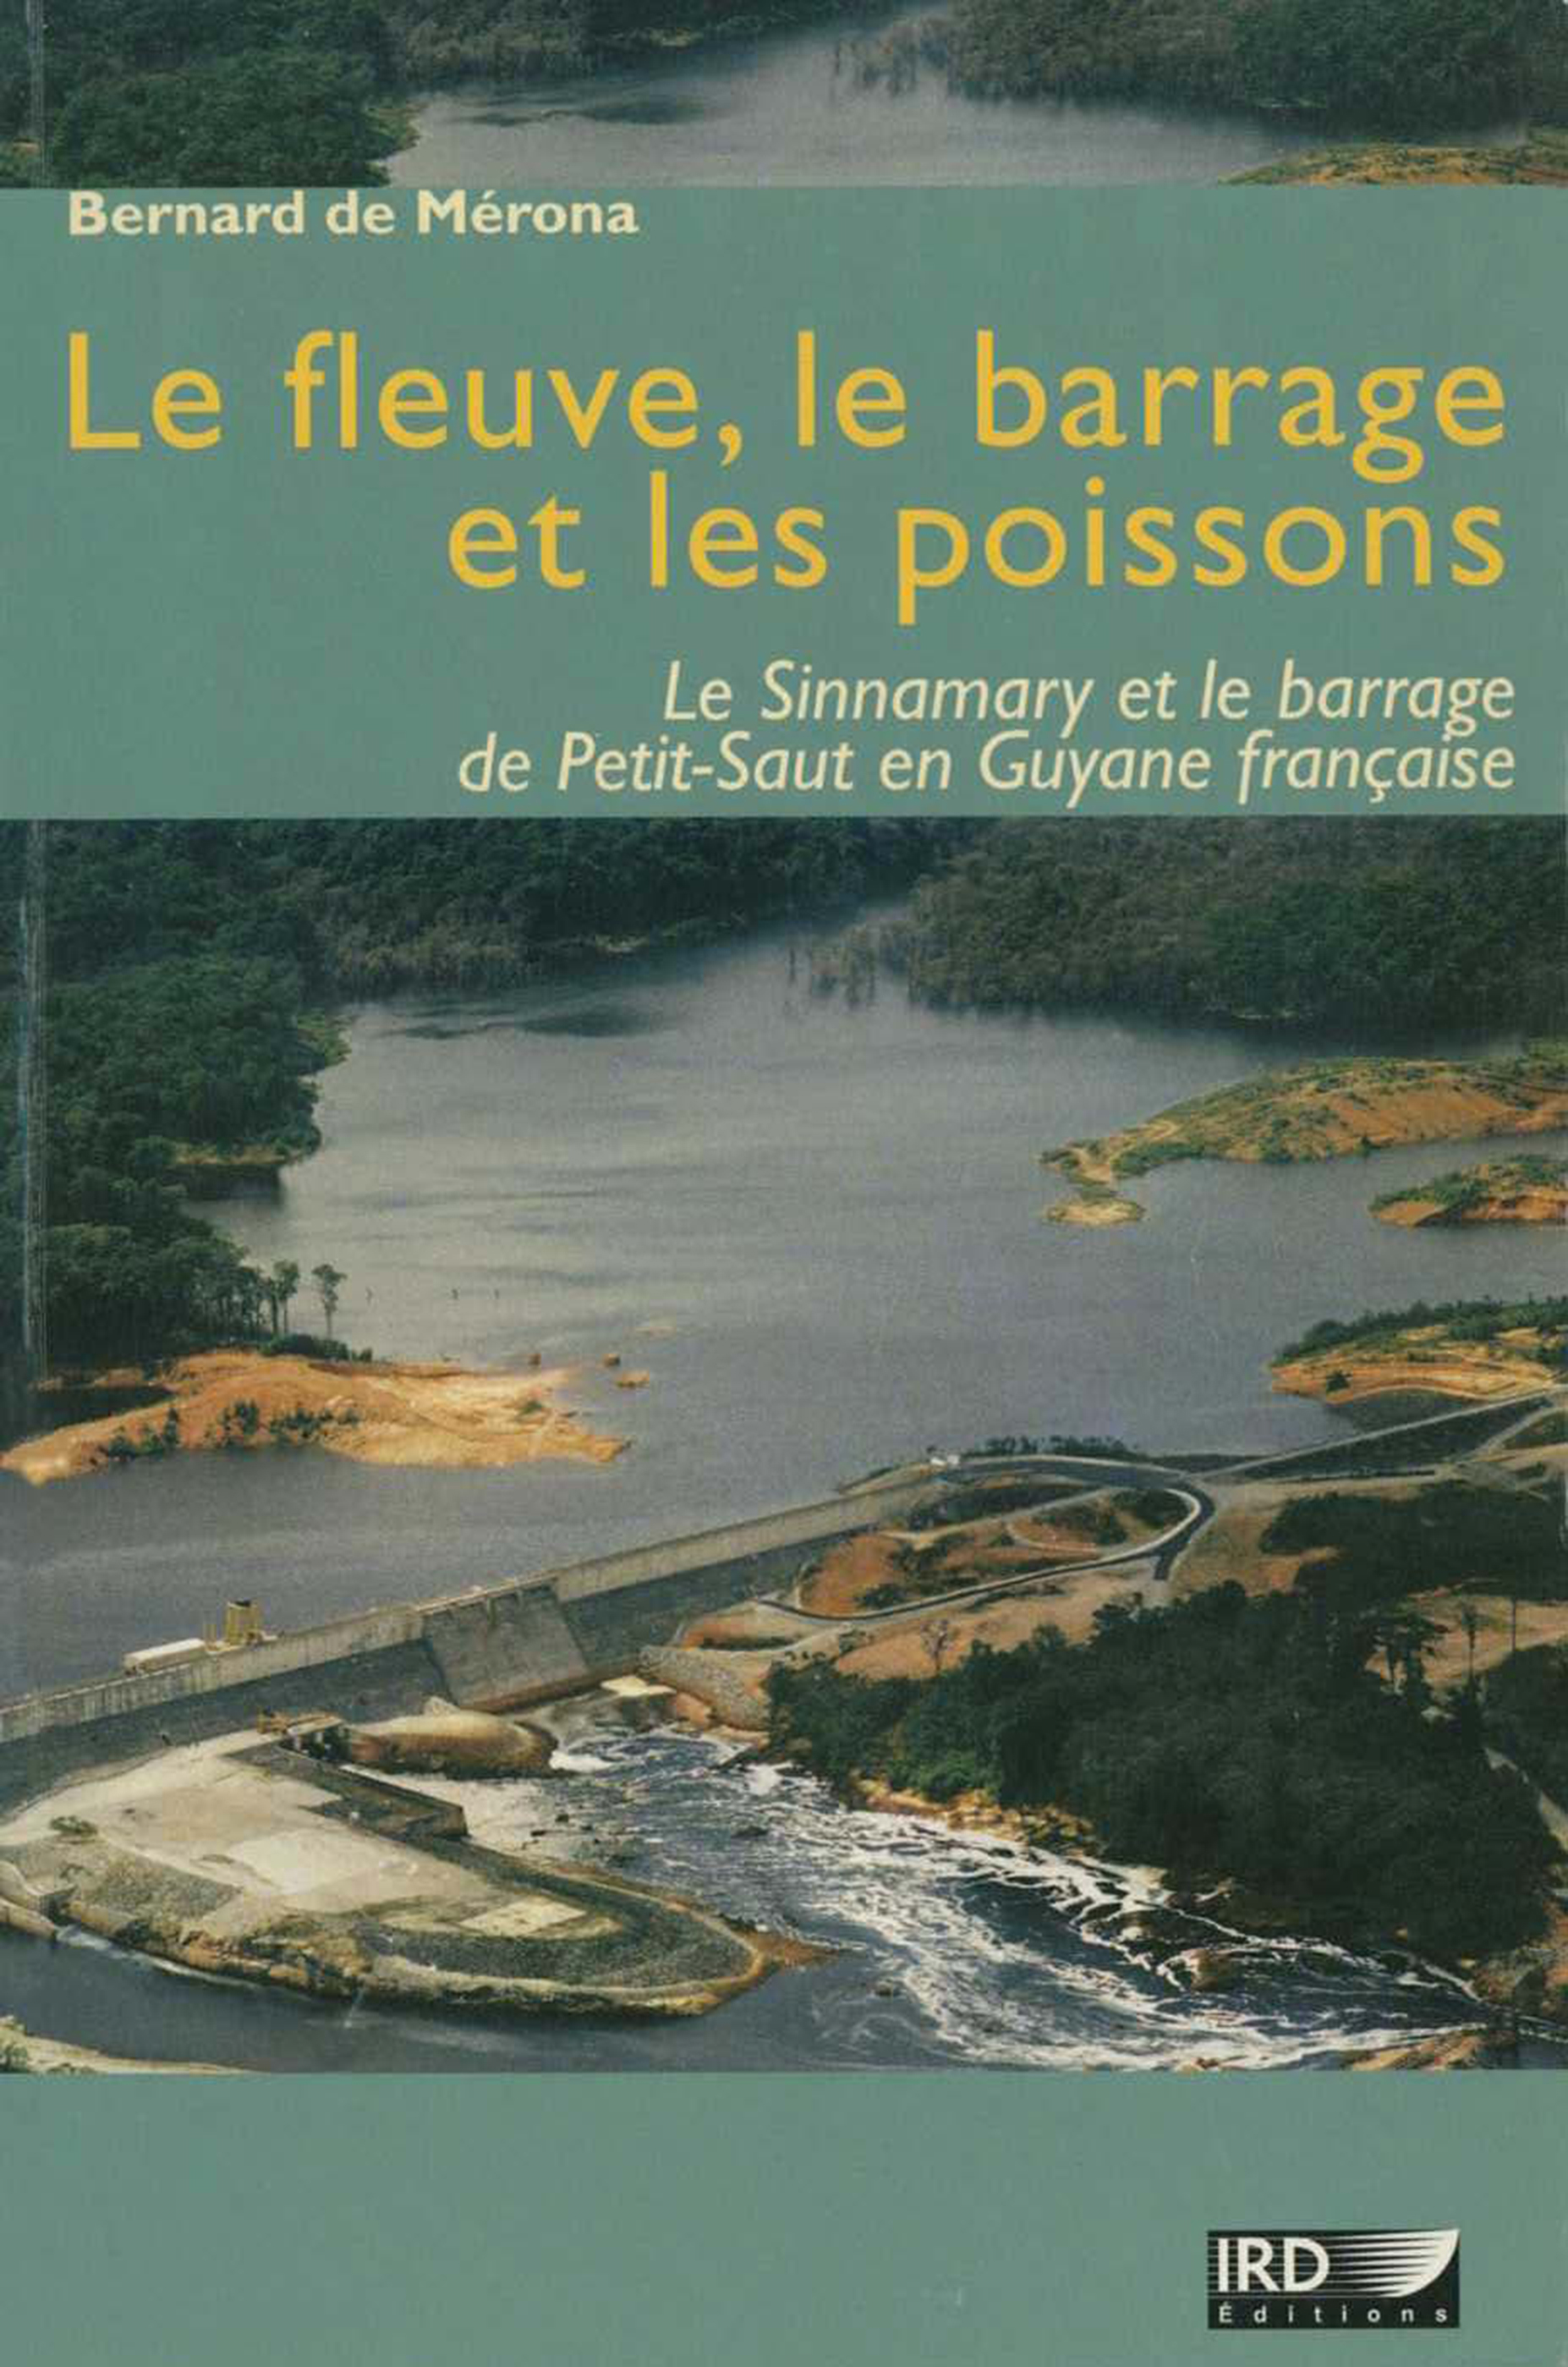 Le fleuve, le barrage et les poissons : Le Sinnamary et le barrage de Petit-Saut en Guyane française